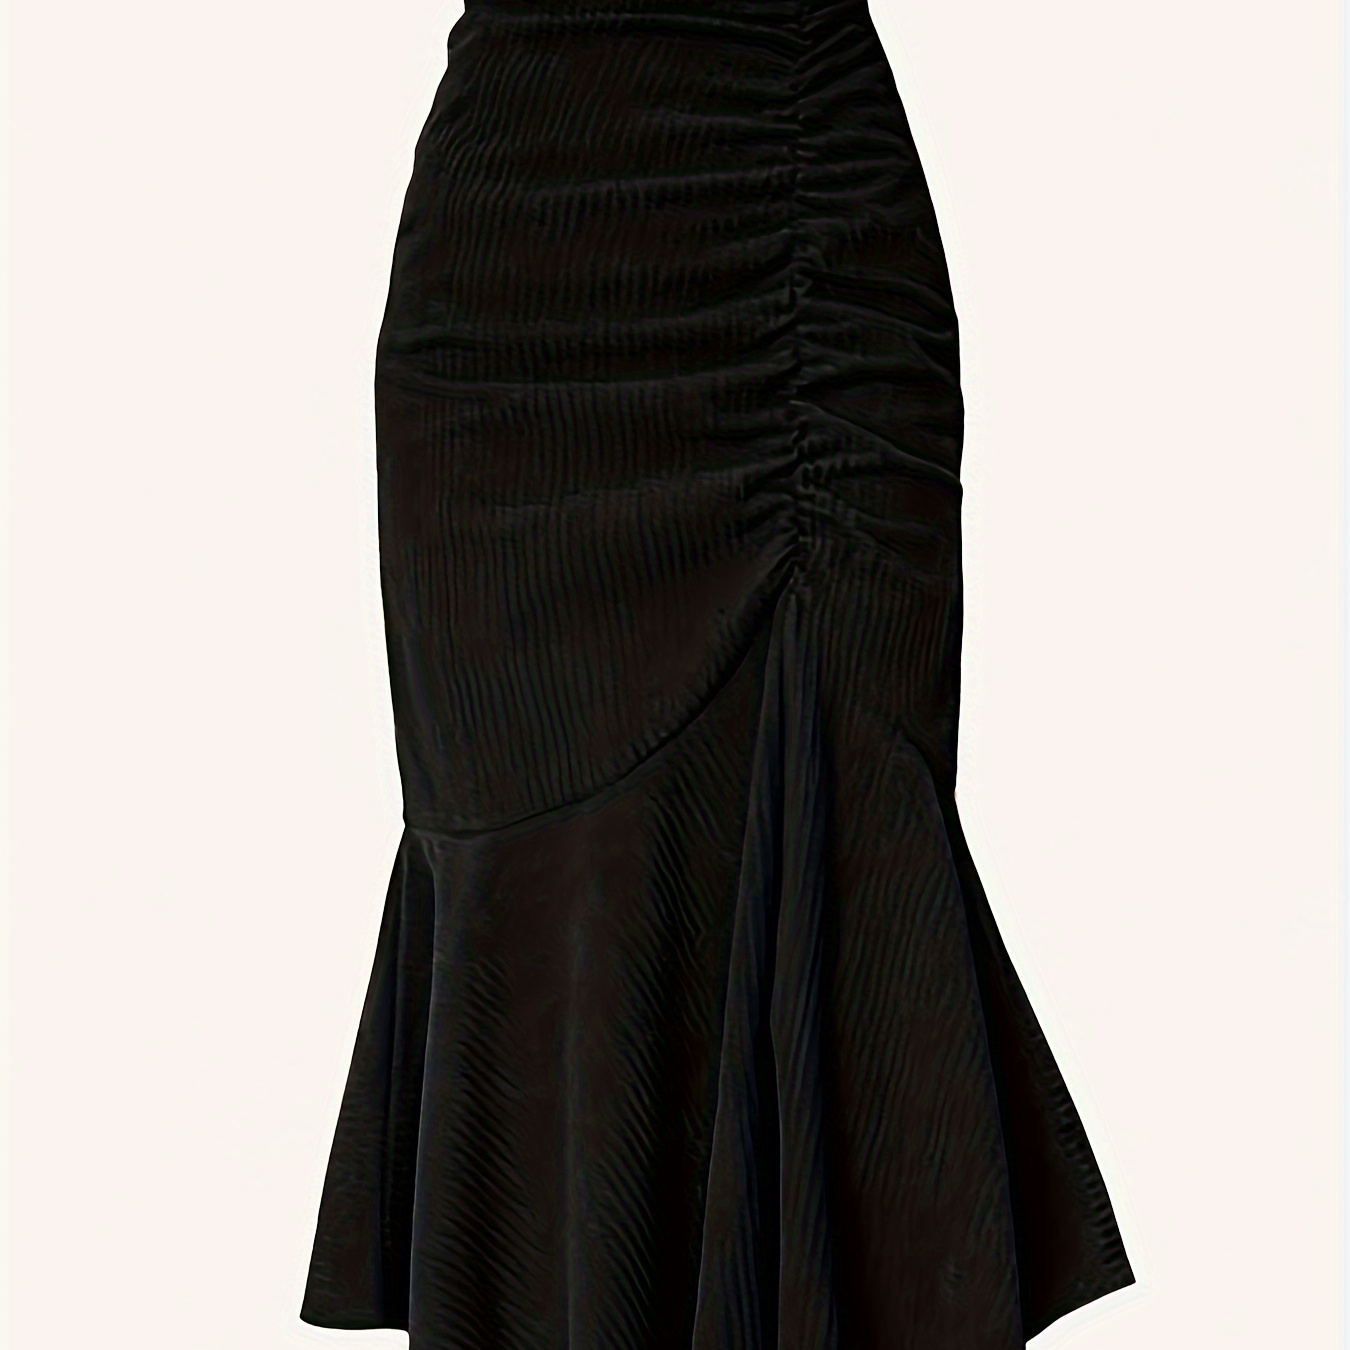 

Solid Color Mermaid Skirt, Elegant High Elastic Waist Skirt For Spring & Summer, Women's Clothing